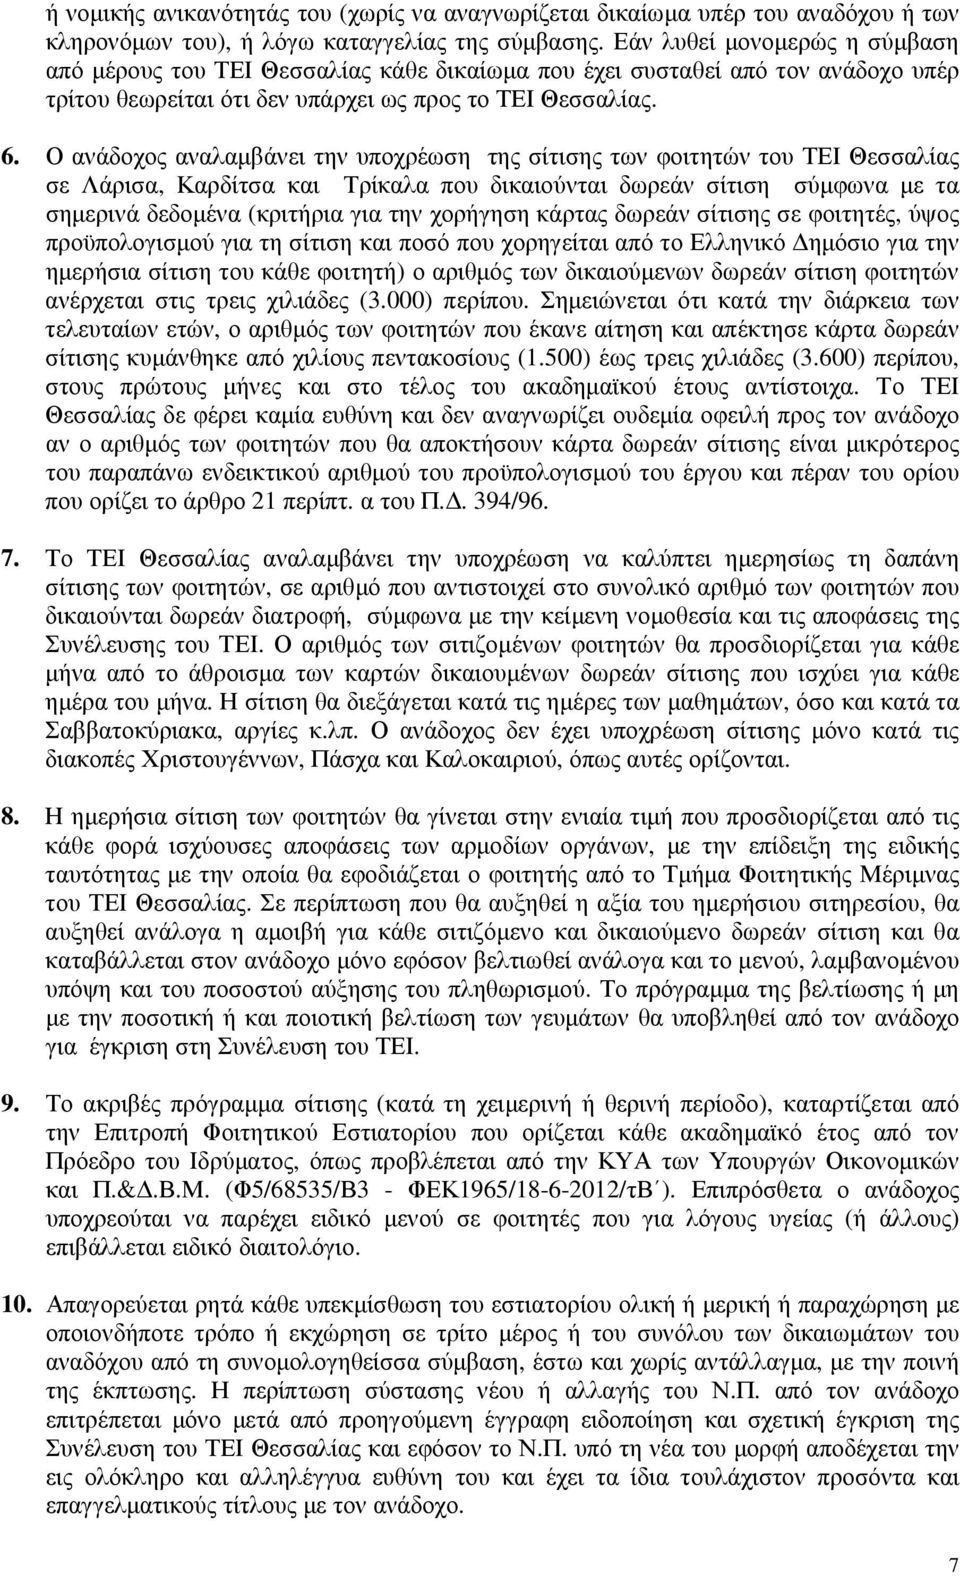 Ο ανάδοχος αναλαµβάνει την υποχρέωση της σίτισης των φοιτητών του ΤΕΙ Θεσσαλίας σε Λάρισα, Καρδίτσα και Τρίκαλα που δικαιούνται δωρεάν σίτιση σύµφωνα µε τα σηµερινά δεδοµένα (κριτήρια για την